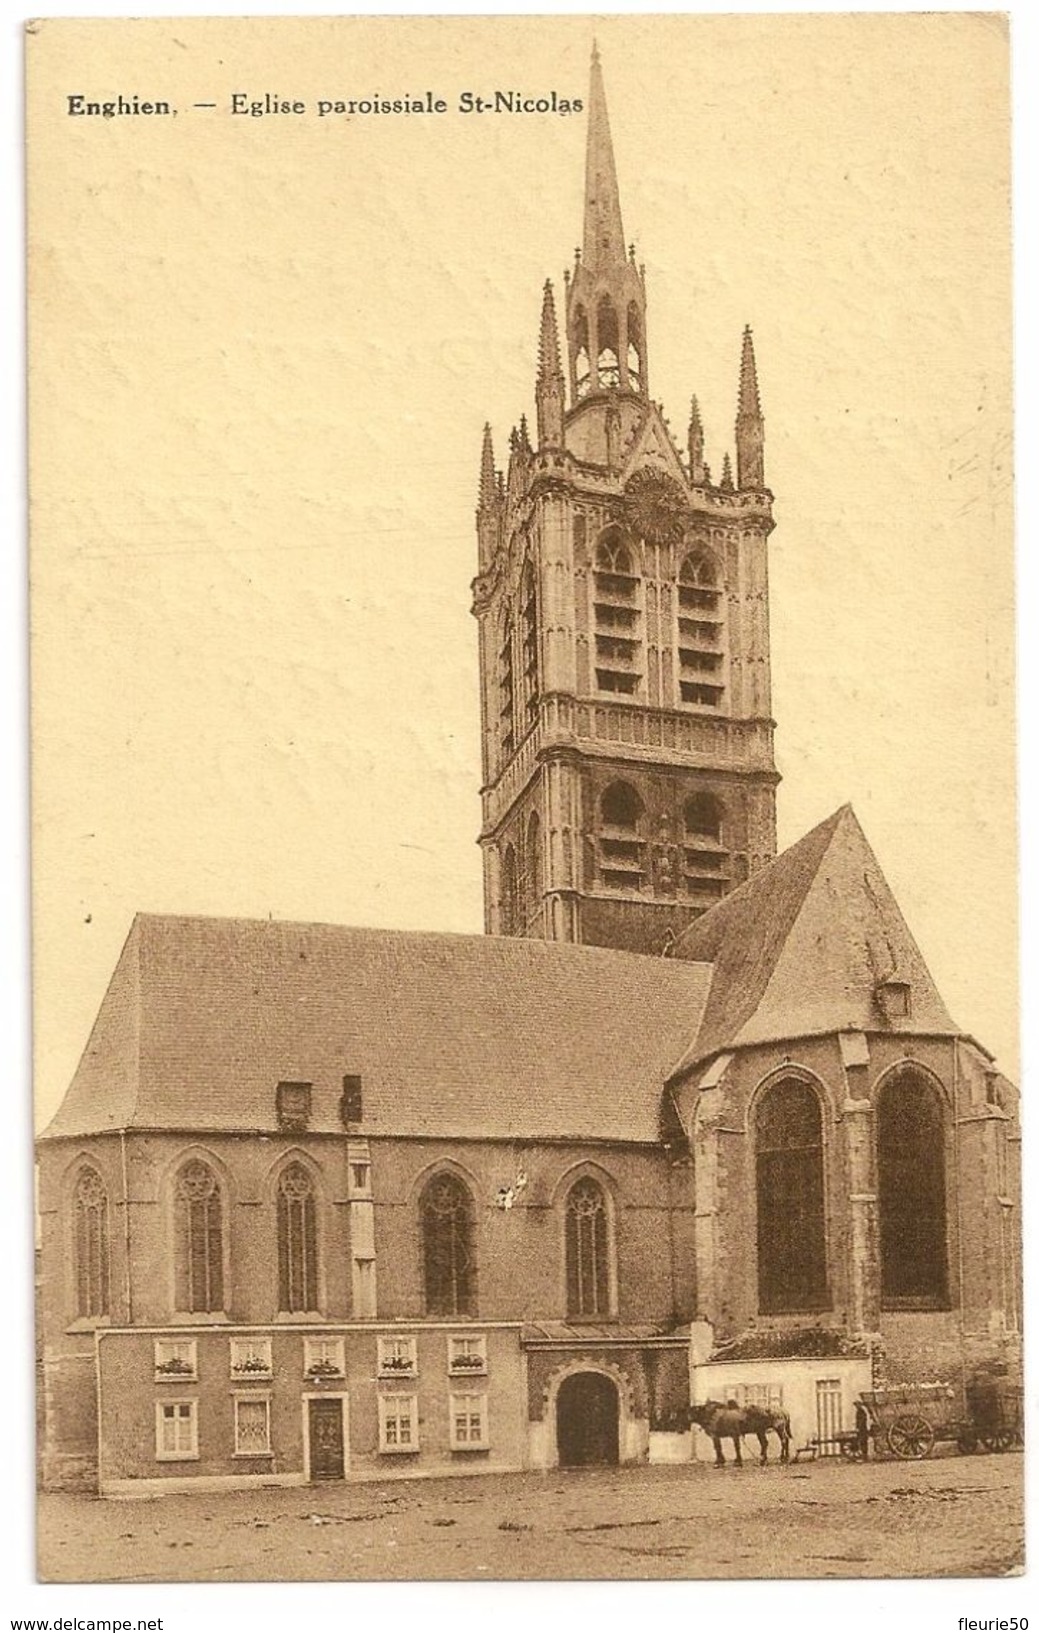 ENGHIEN - Eglise Paroissiale St-Nicolas. Chevaux, Charette. Edition Edm; Duwez. - Enghien - Edingen